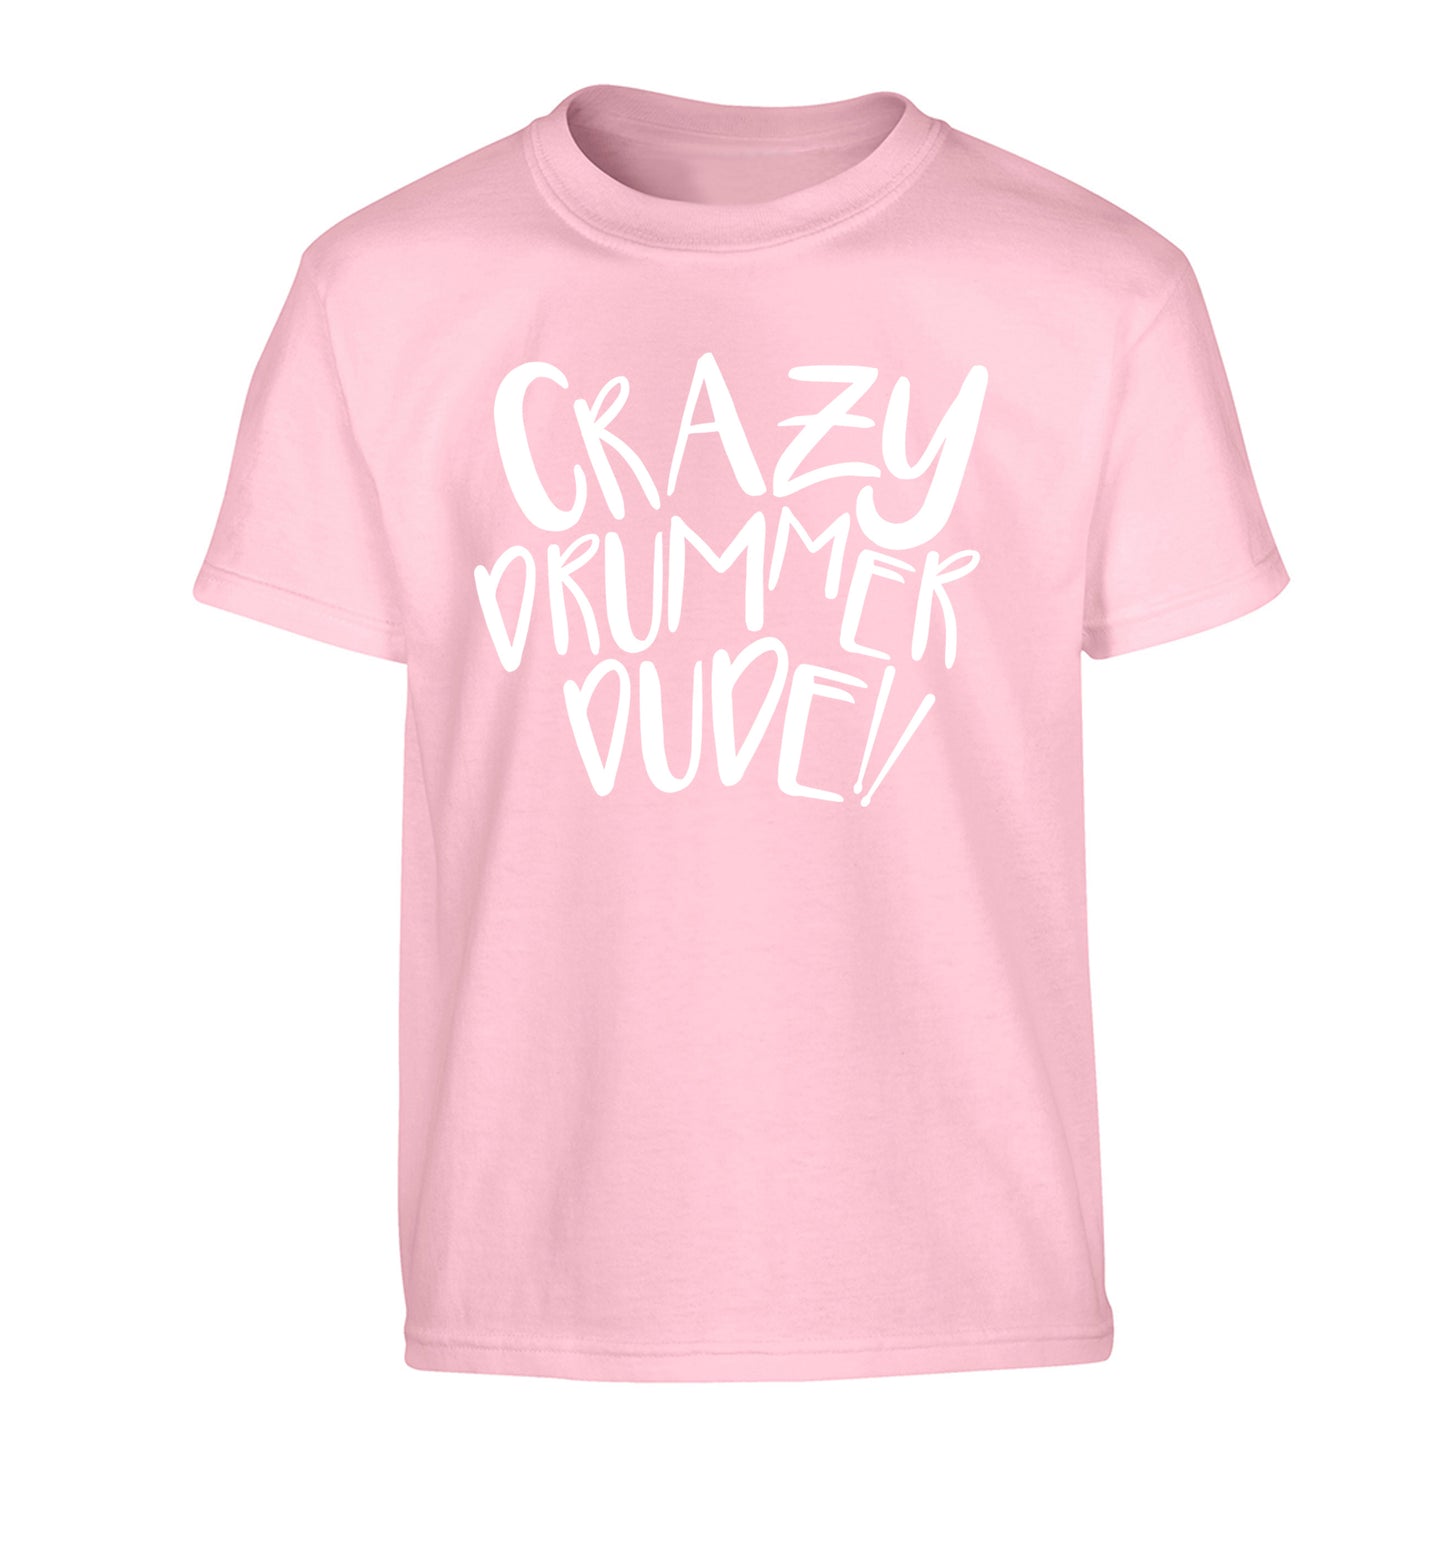 Crazy drummer dude Children's light pink Tshirt 12-14 Years